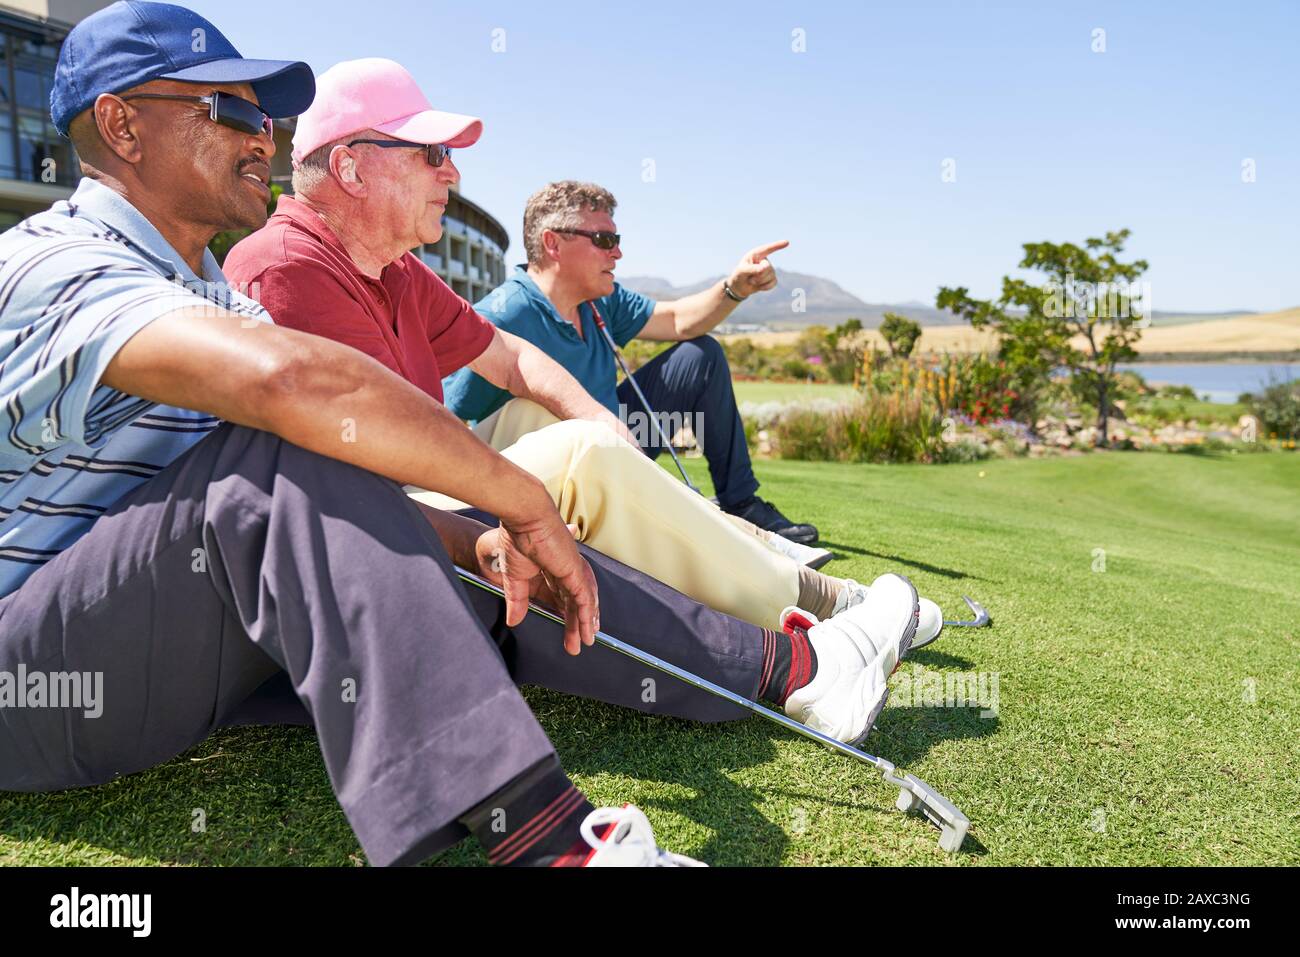 Les golfeurs de sexe masculin se reposent sur une pelouse sur un terrain de golf ensoleillé Banque D'Images